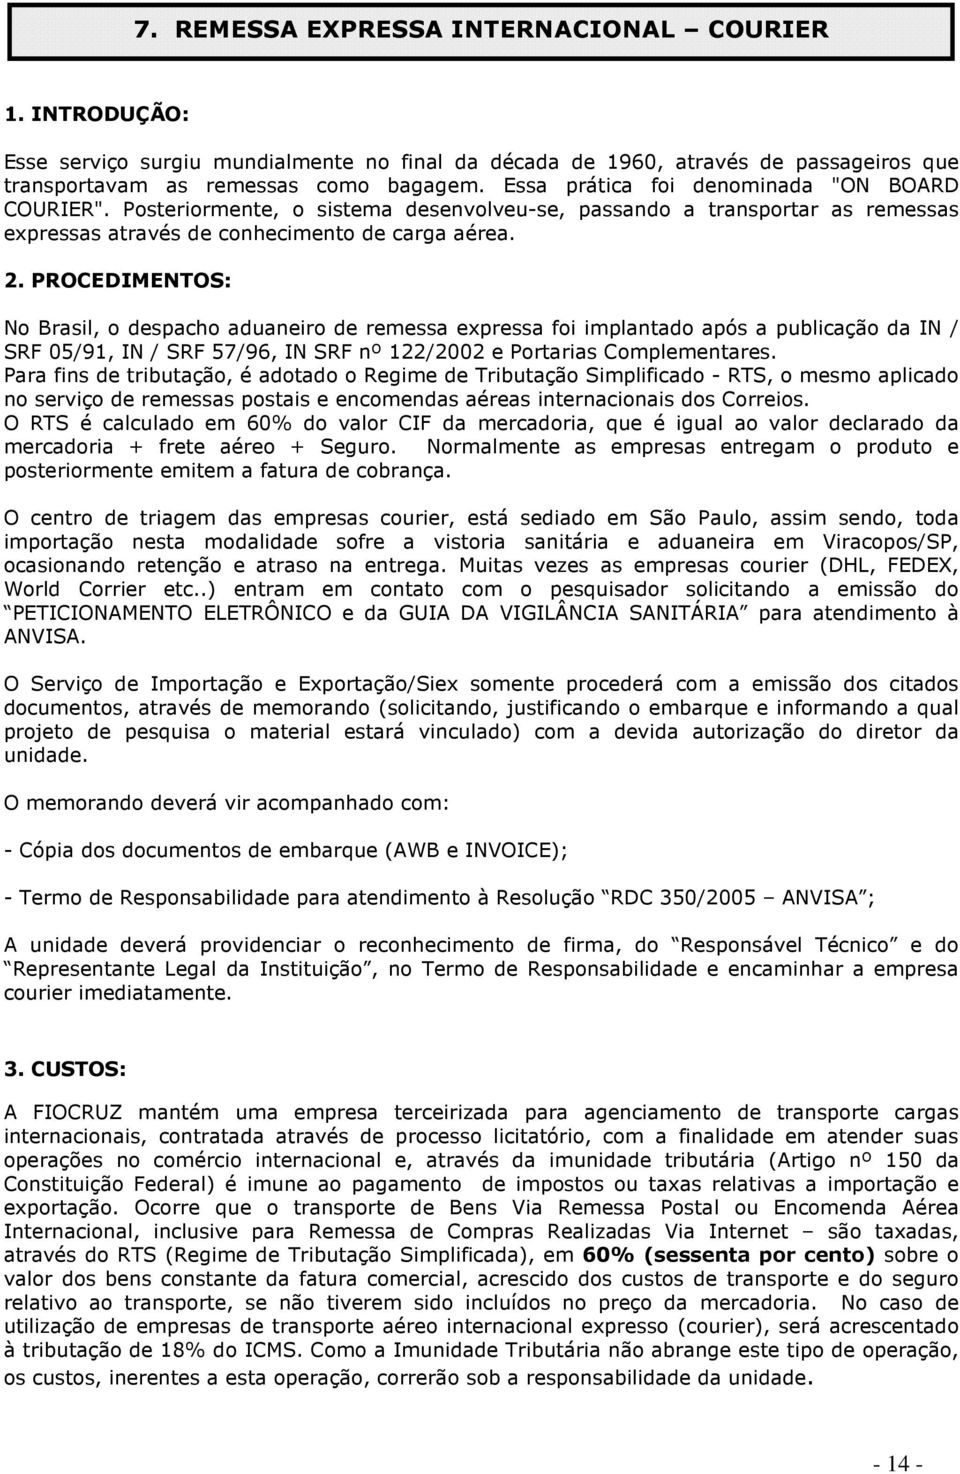 PROCEDIMENTOS: No Brasil, o despacho aduaneiro de remessa expressa foi implantado após a publicação da IN / SRF 05/91, IN / SRF 57/96, IN SRF nº 122/2002 e Portarias Complementares.